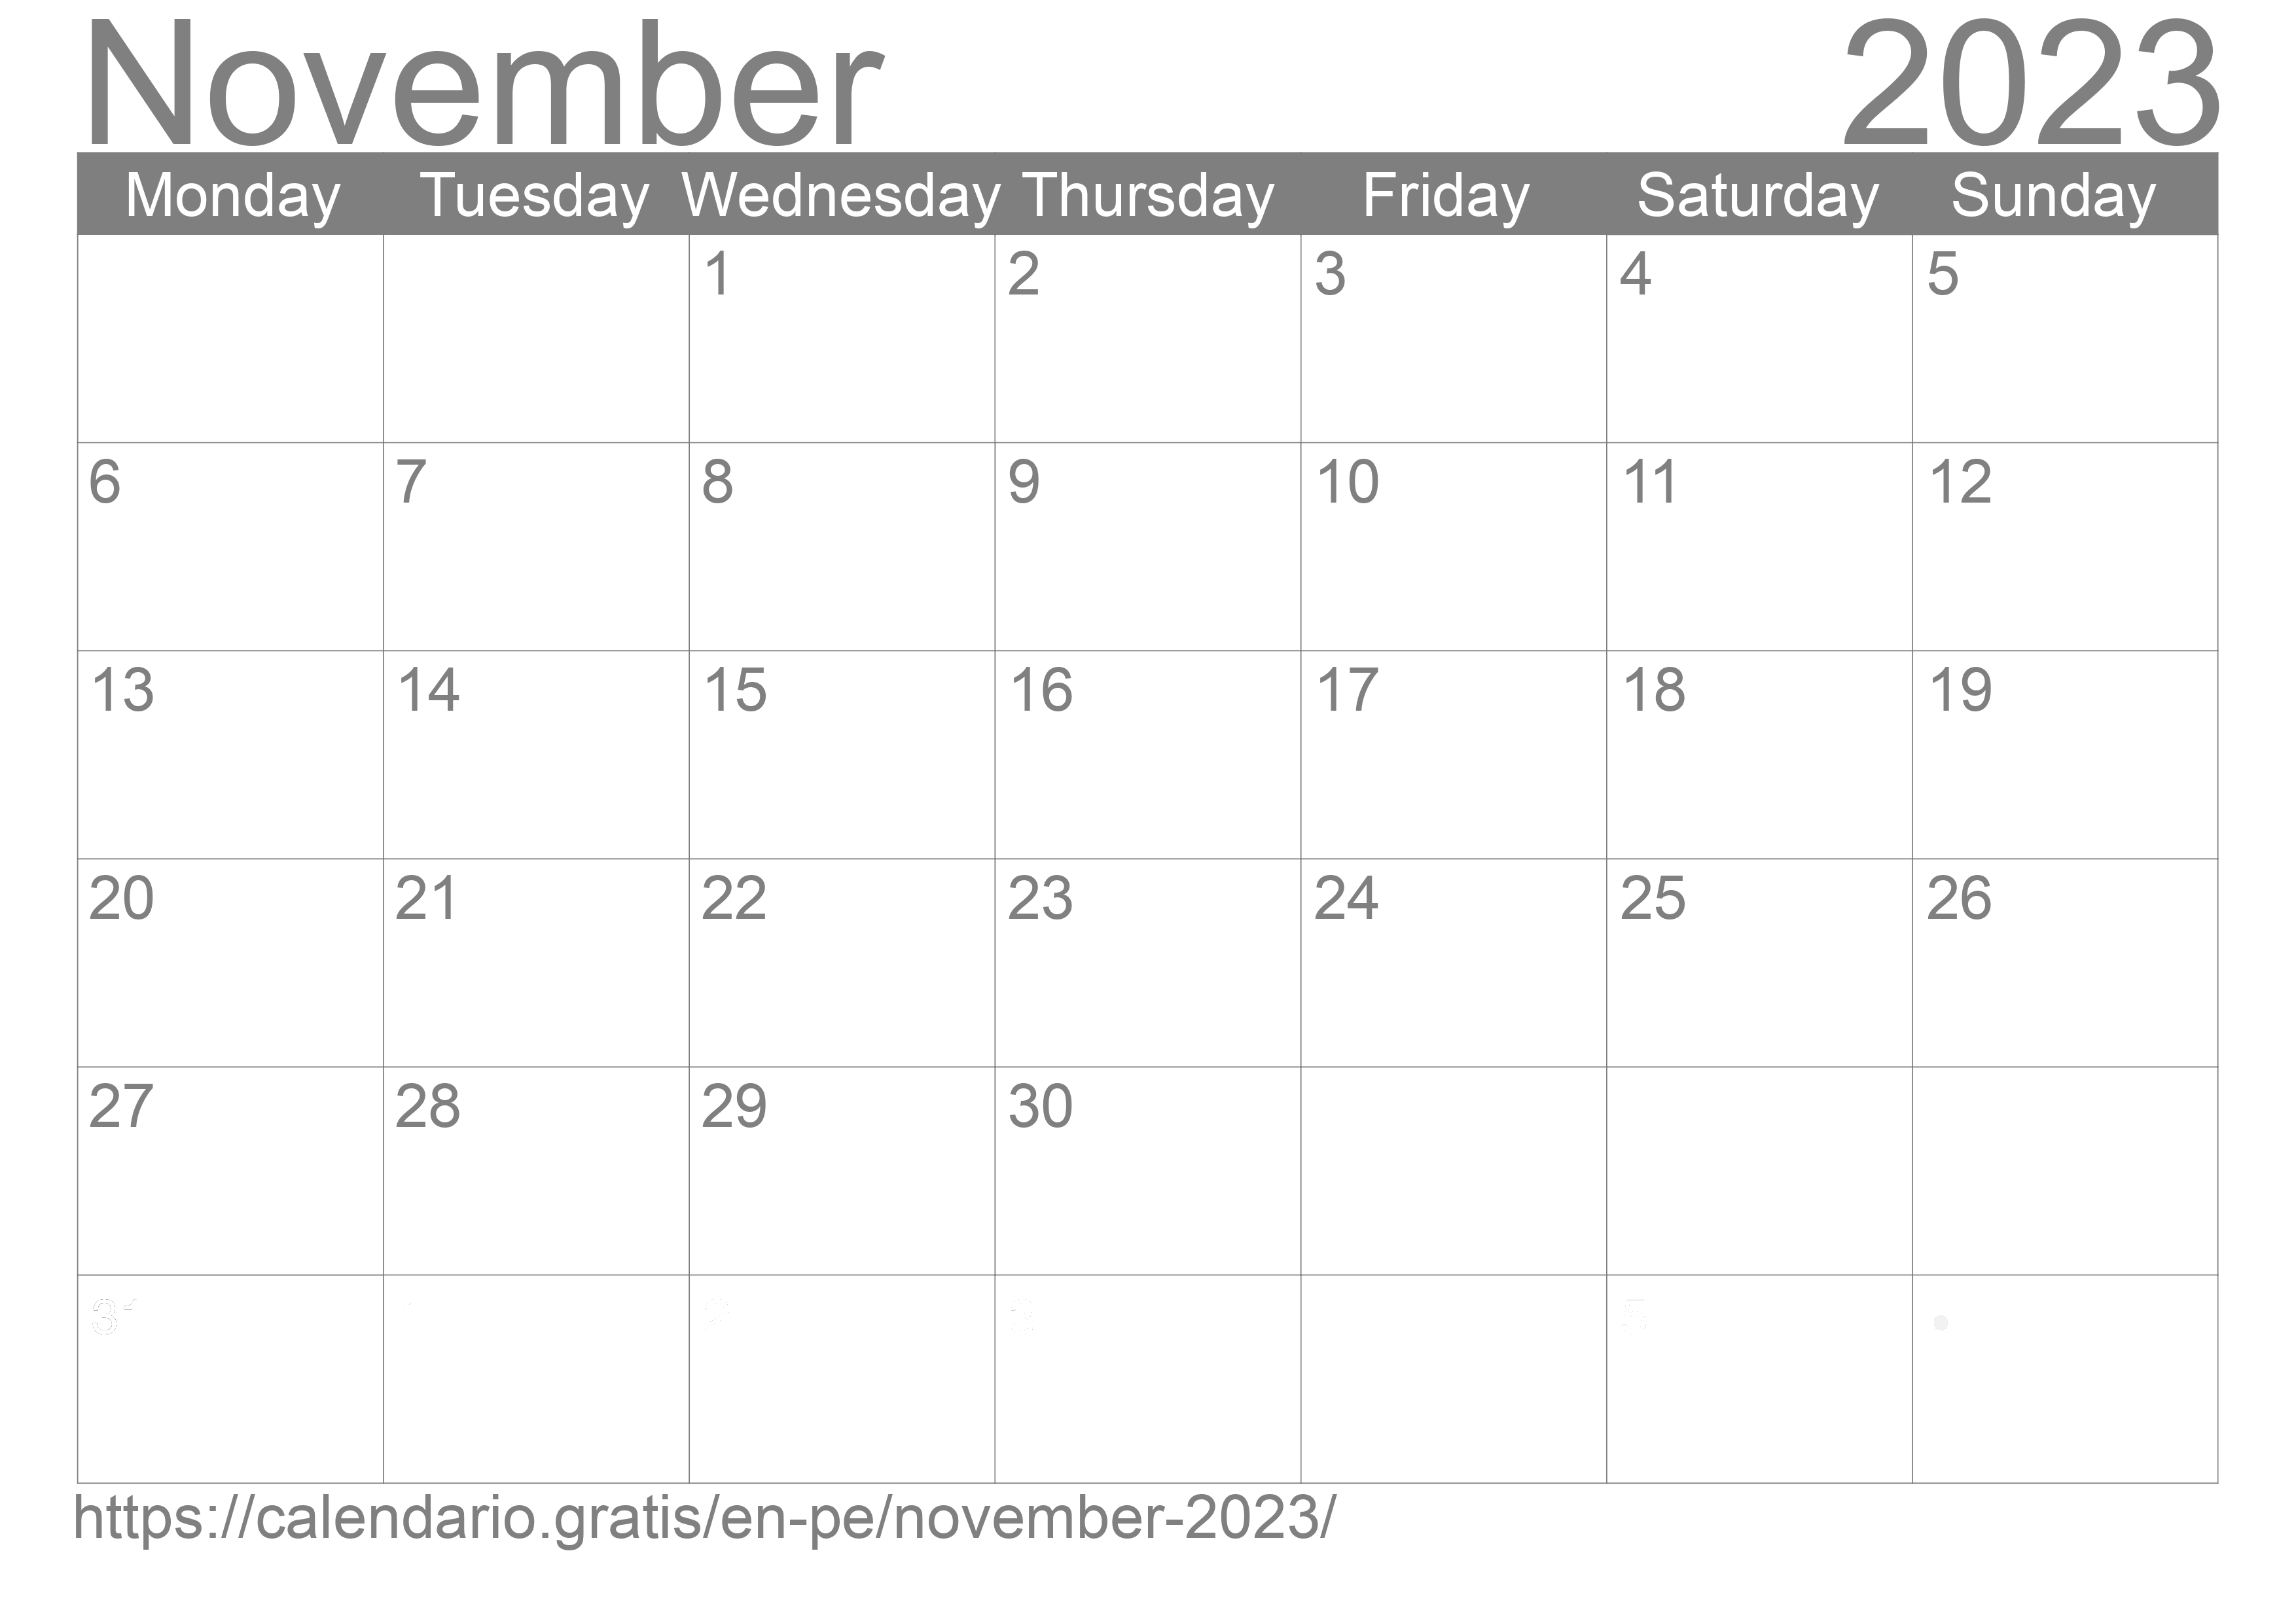 calendar-november-2023-in-english-calendario-gratis